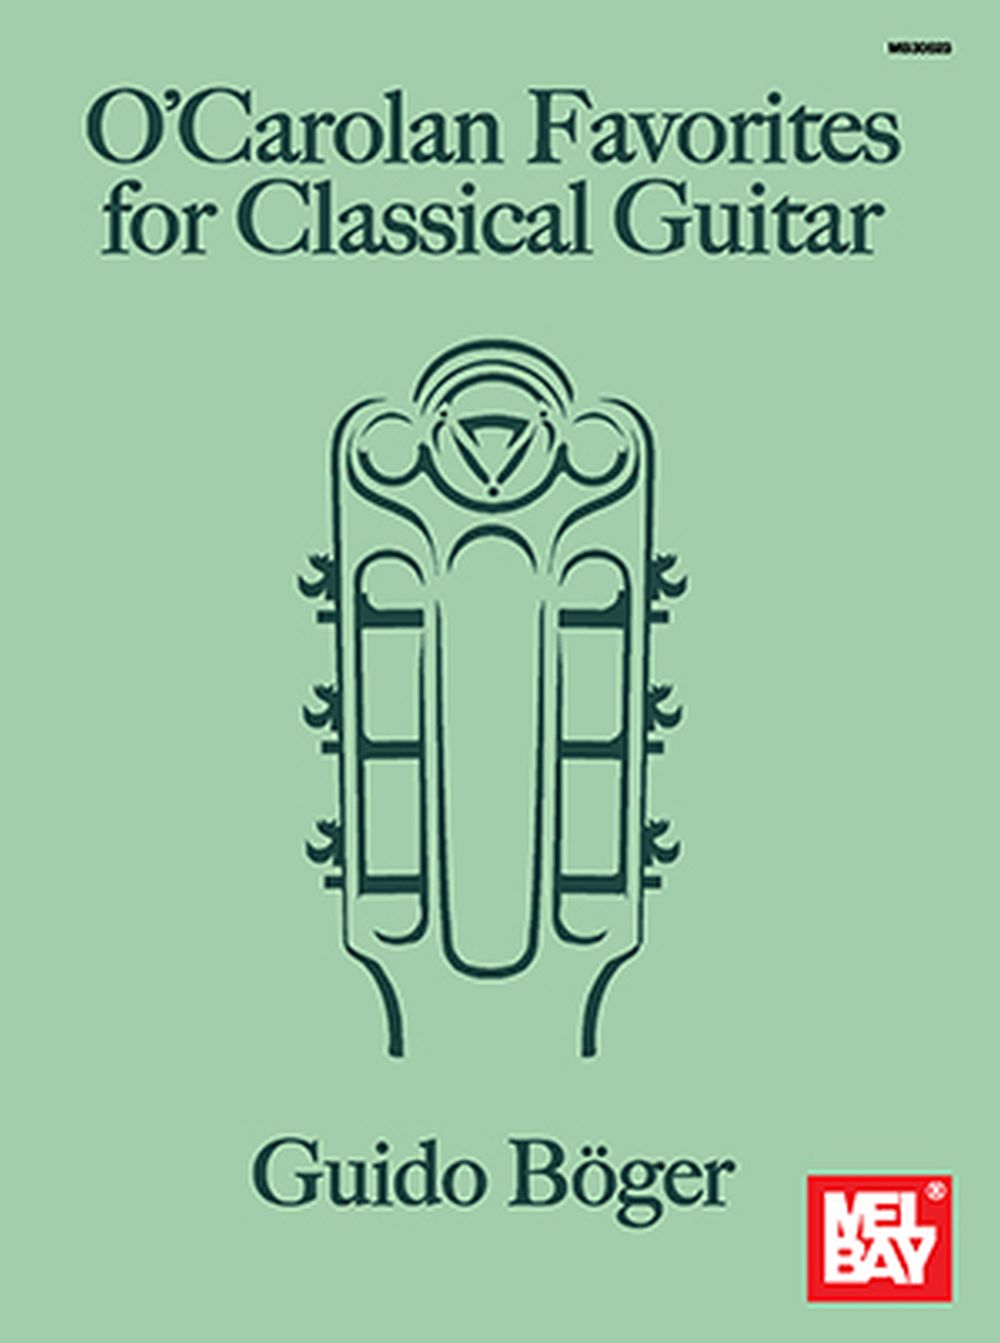 Guido Boger: O'Carolan Favorites For Classical Guitar: Classical Guitar: